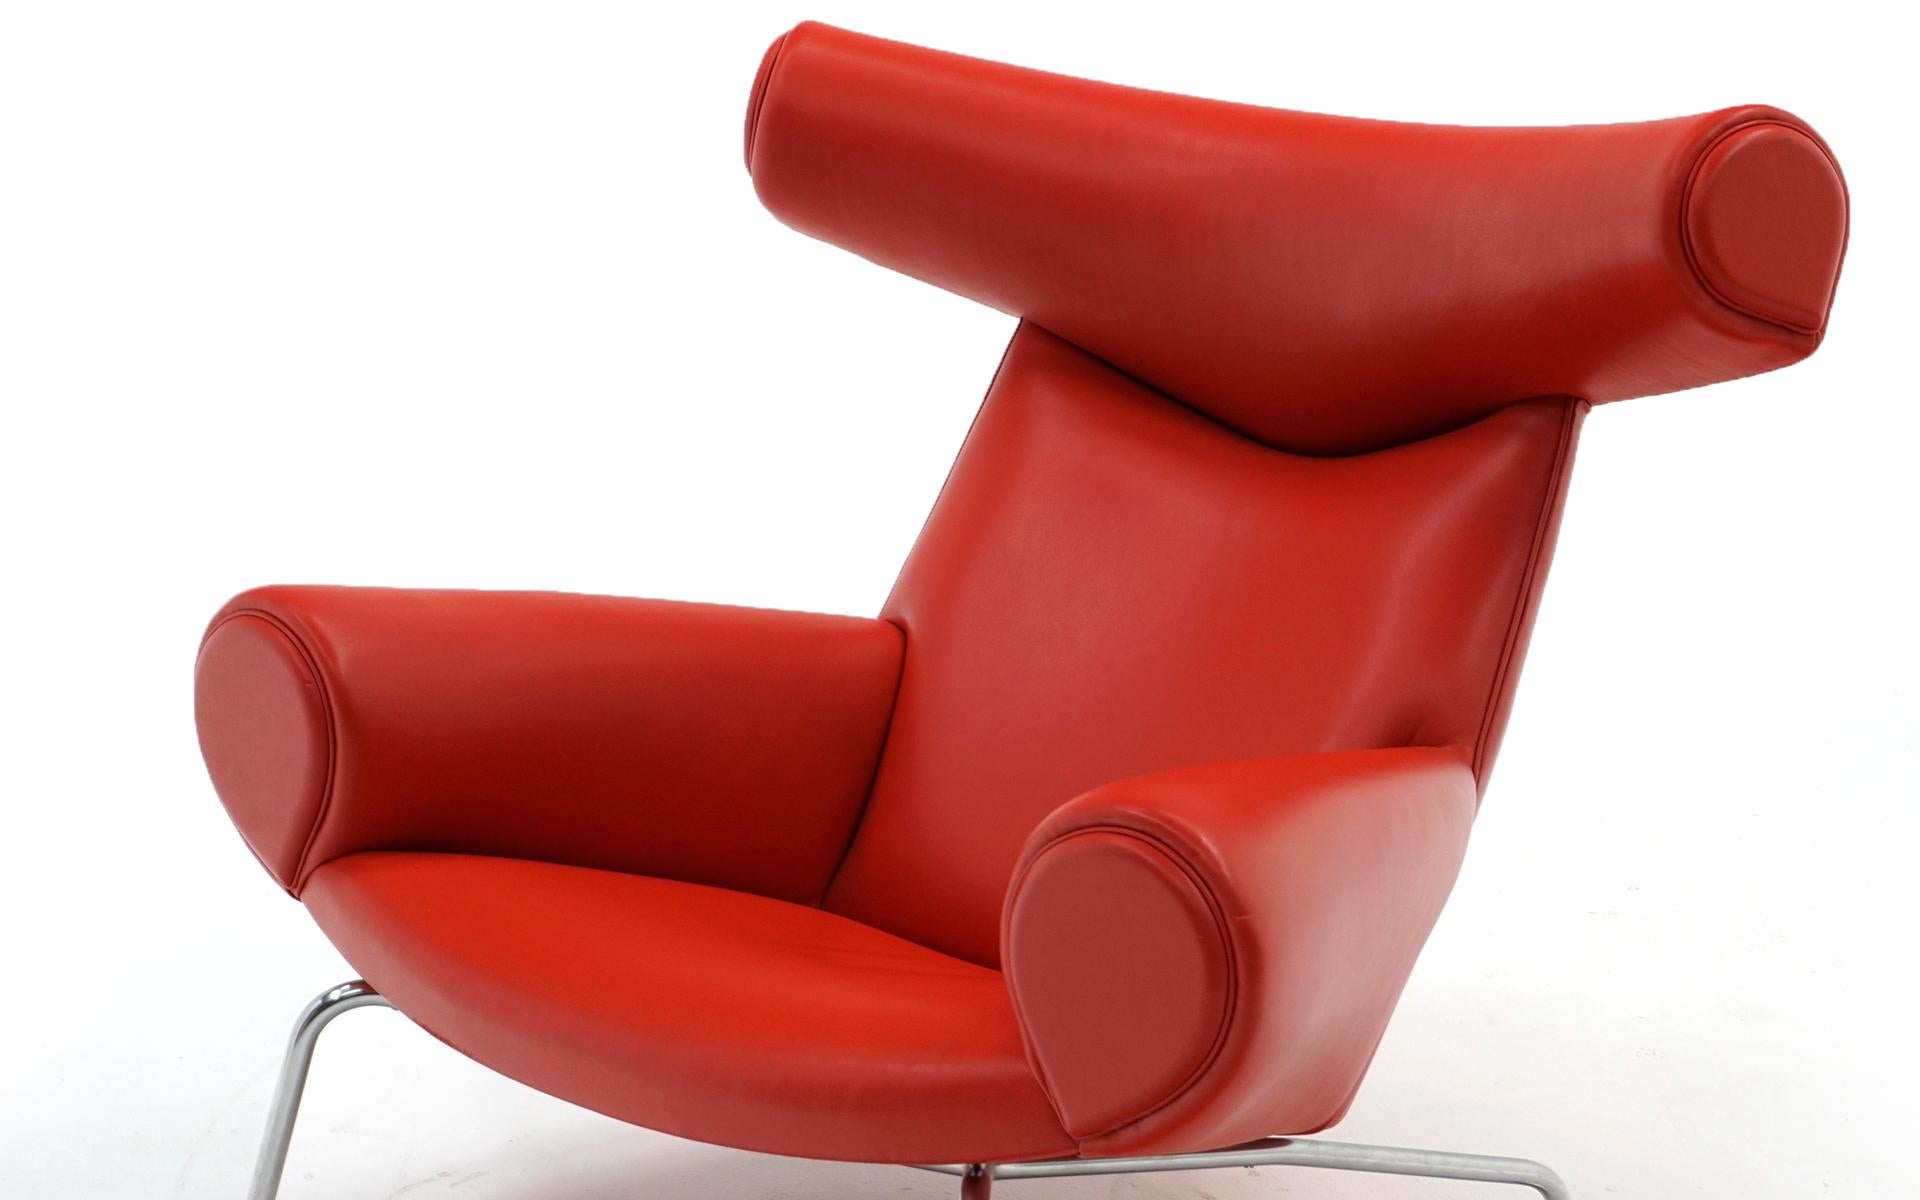 Cuir Hans Wegner Ox Lounge Chair:: Modèle No. AP-46:: Nouveau cuir rouge:: Excellent